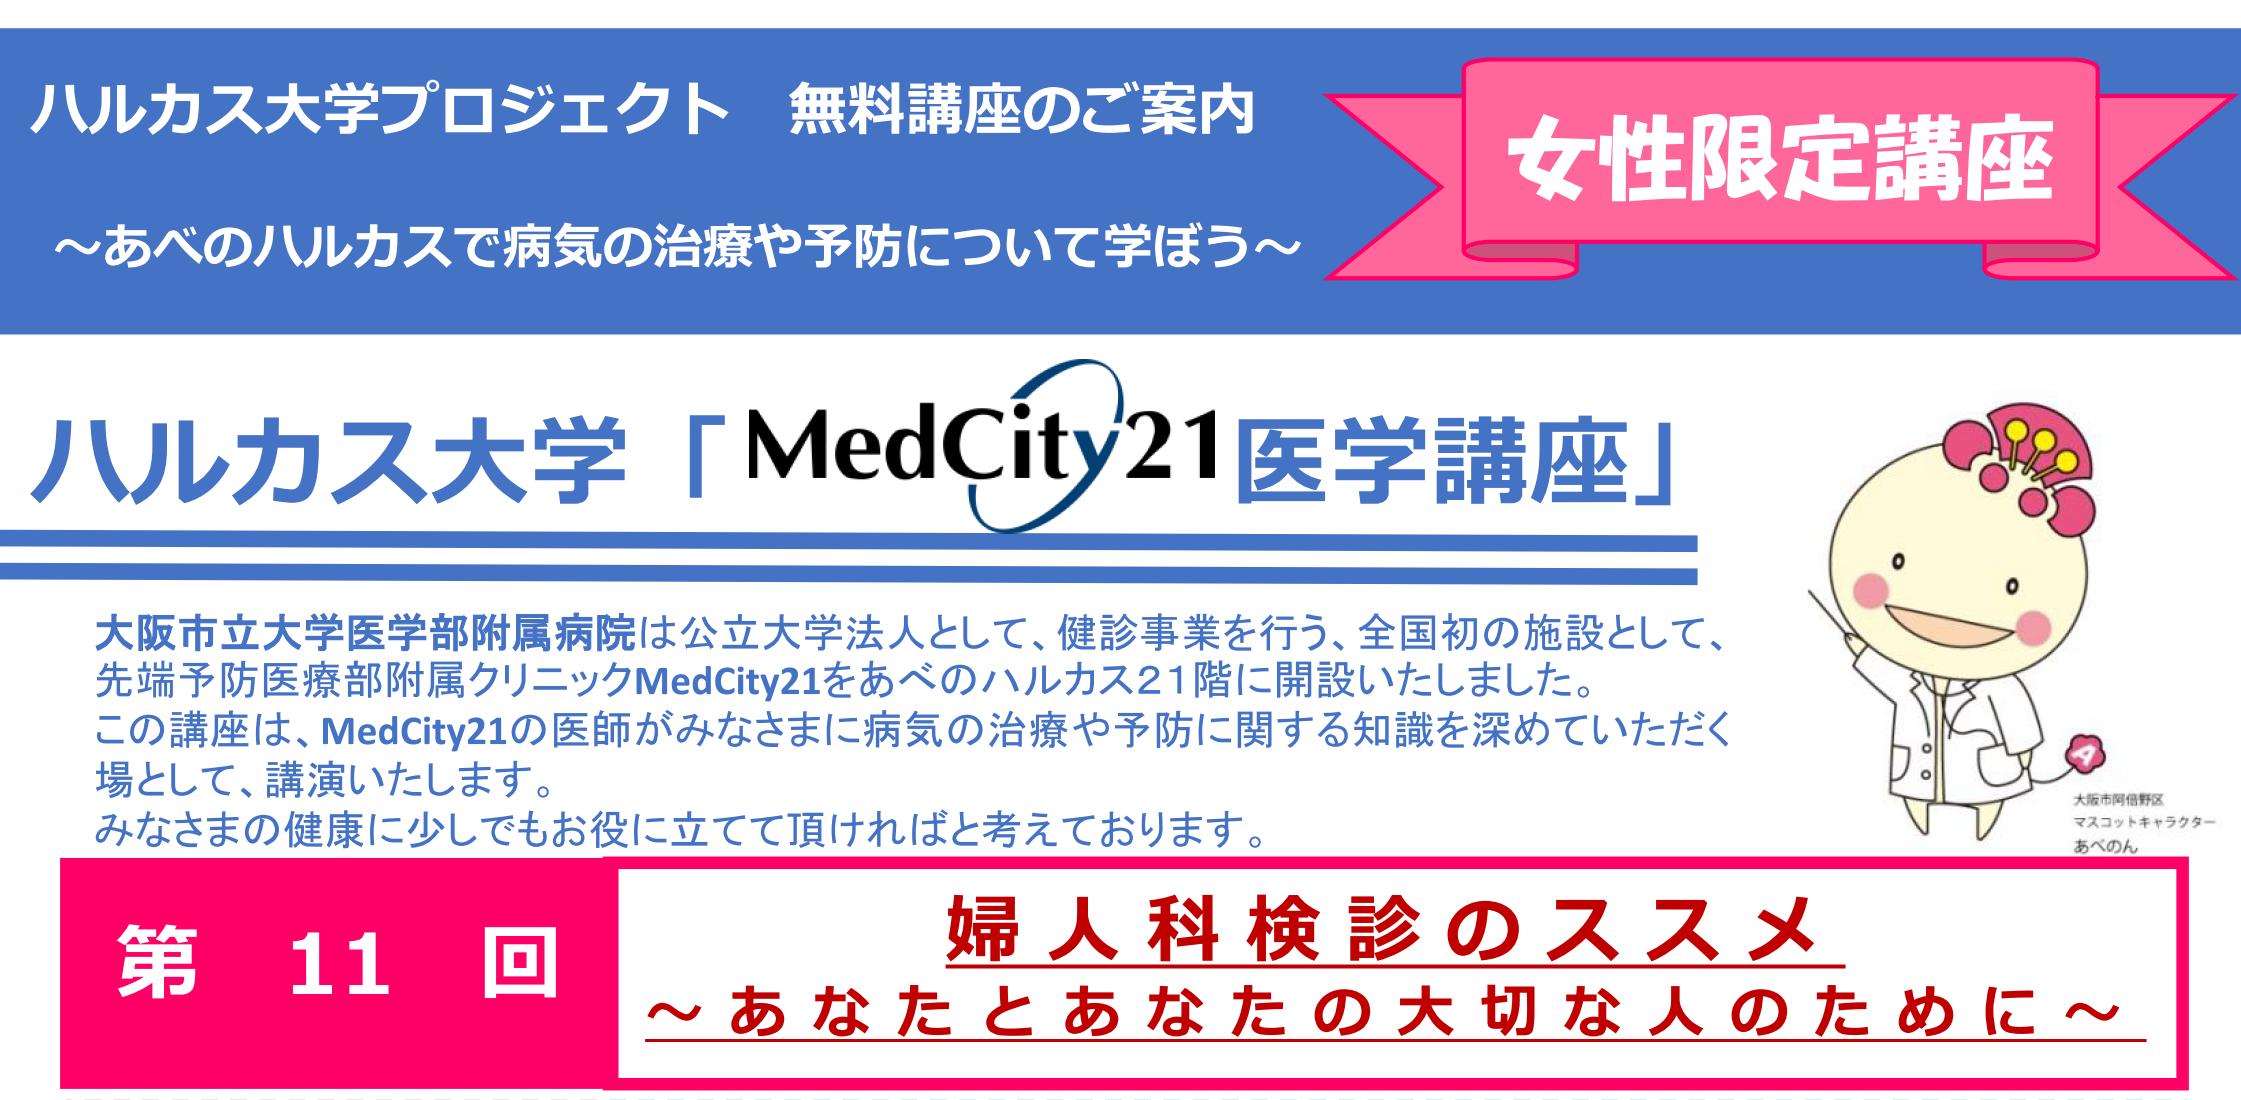 大阪市立大学医学部MedCity21医学講座